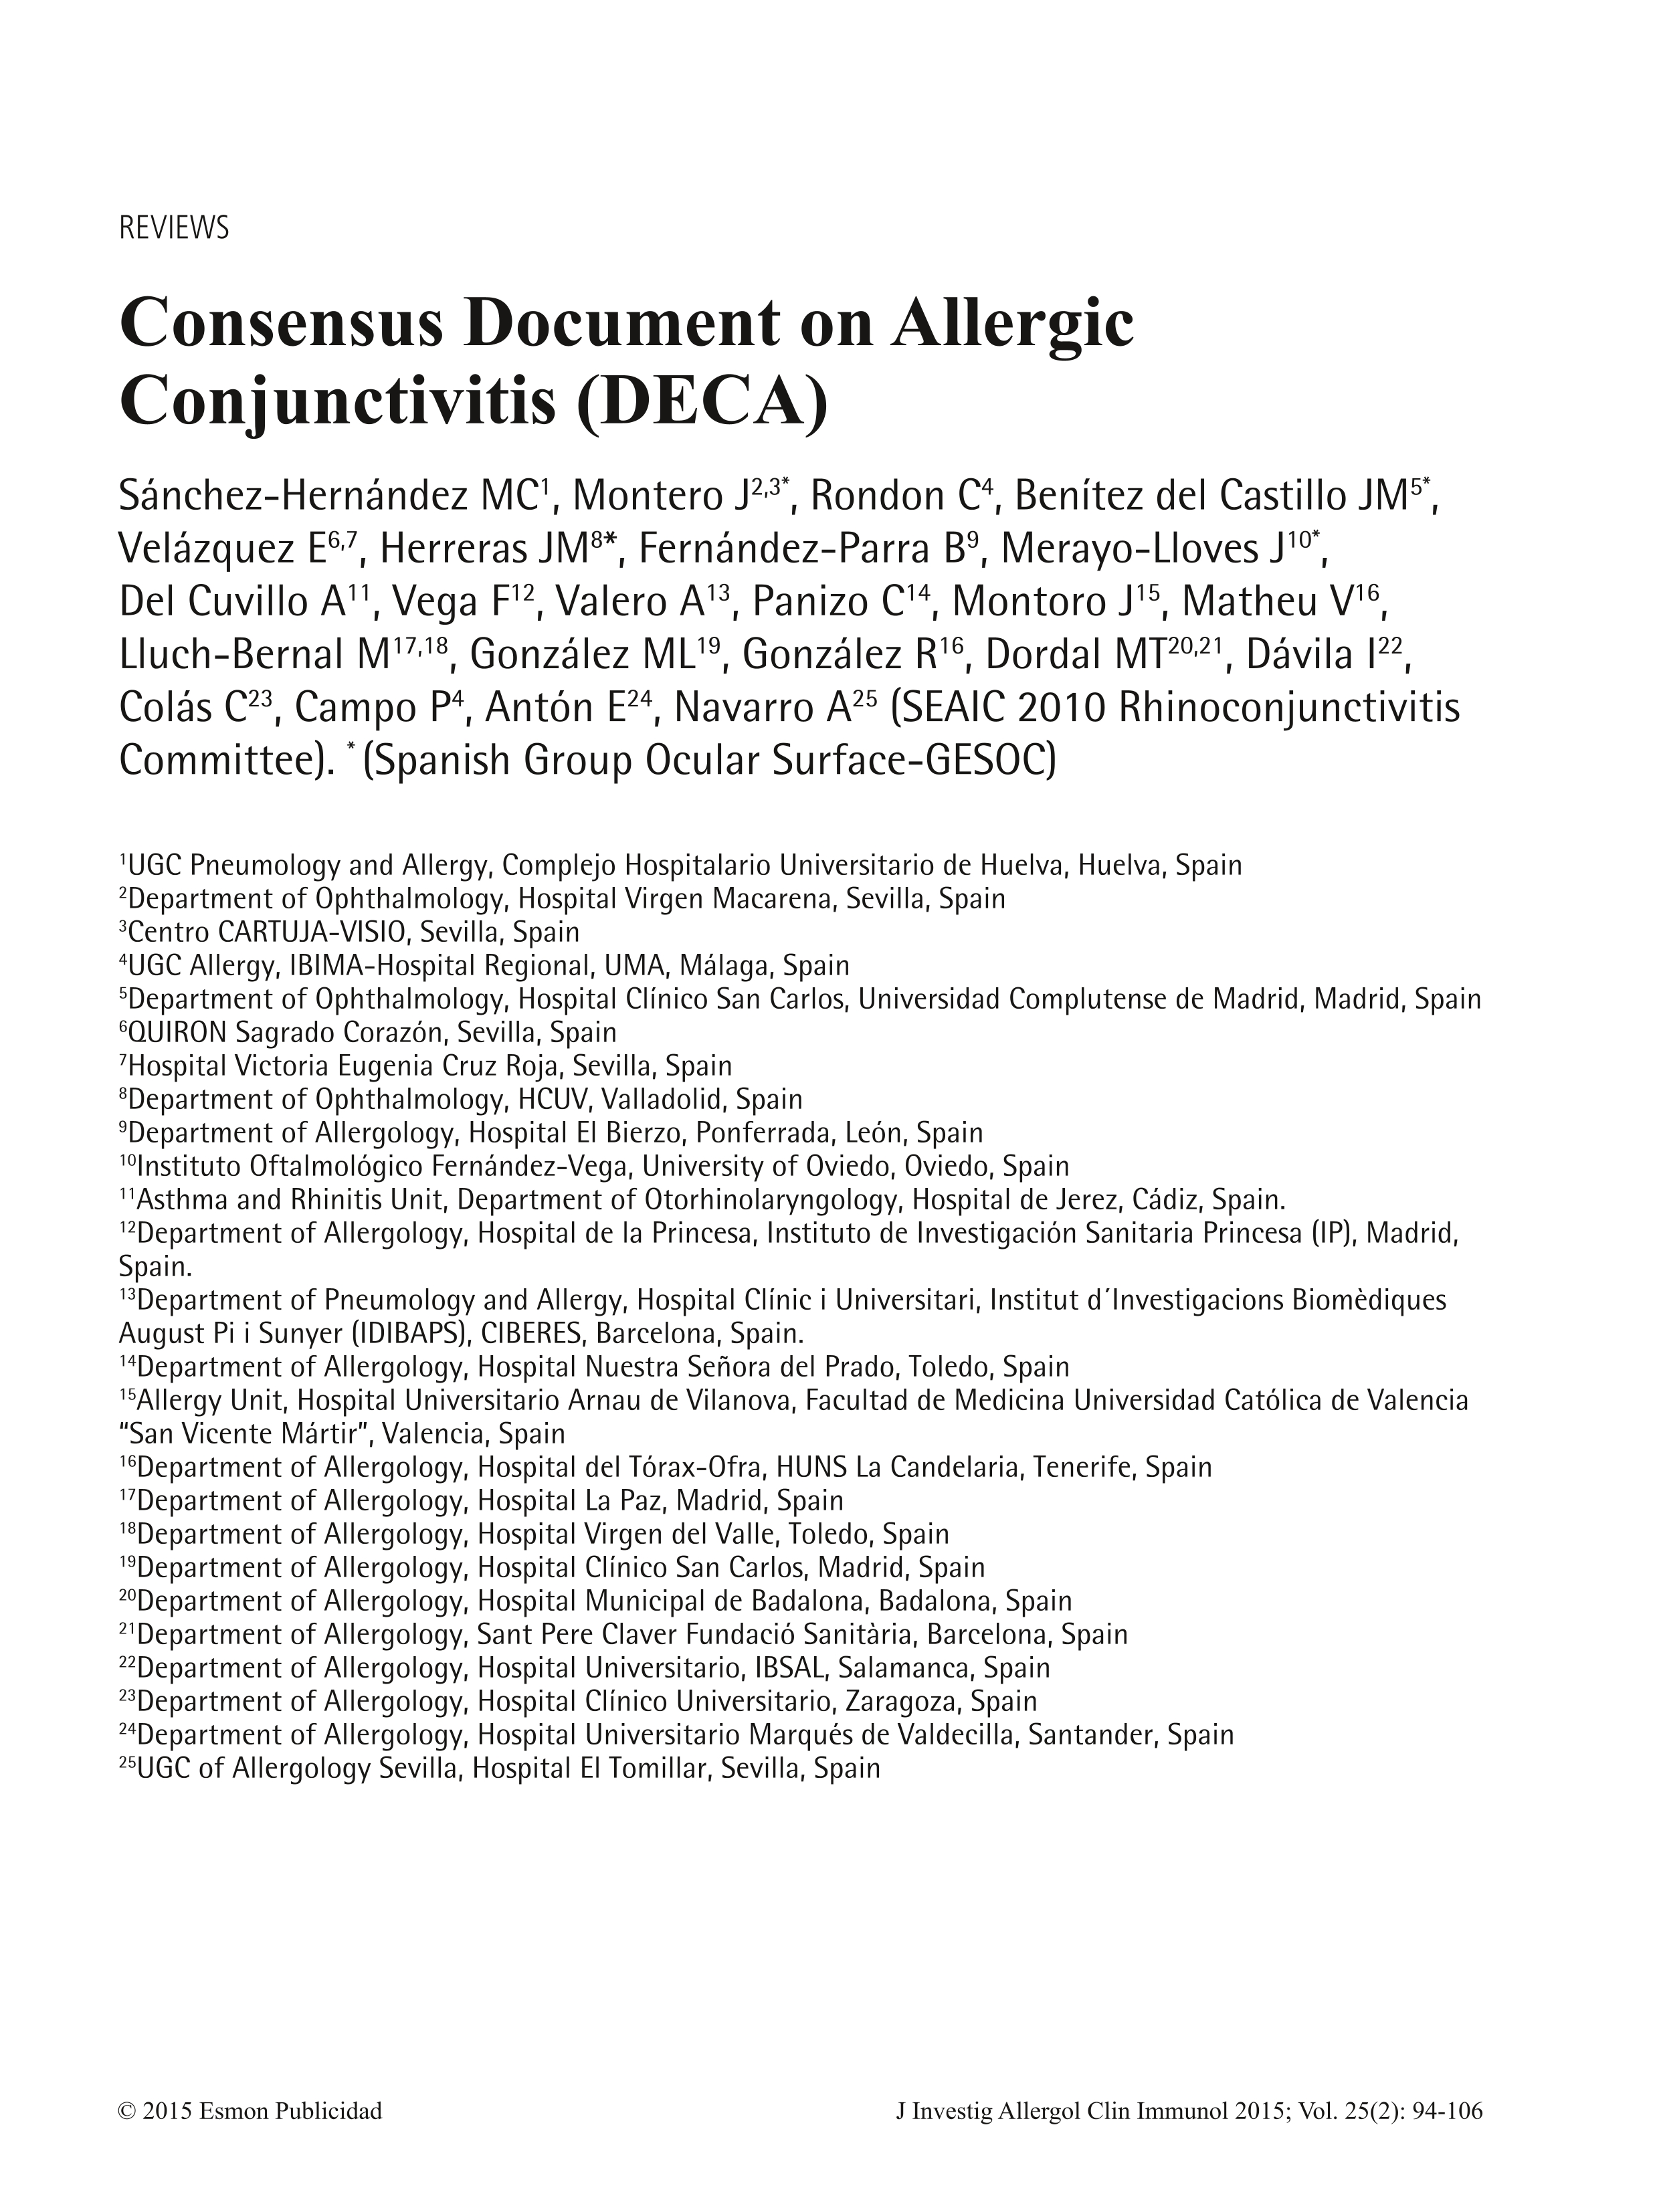 Consensus document on allergic conjunctivitis (DECA)